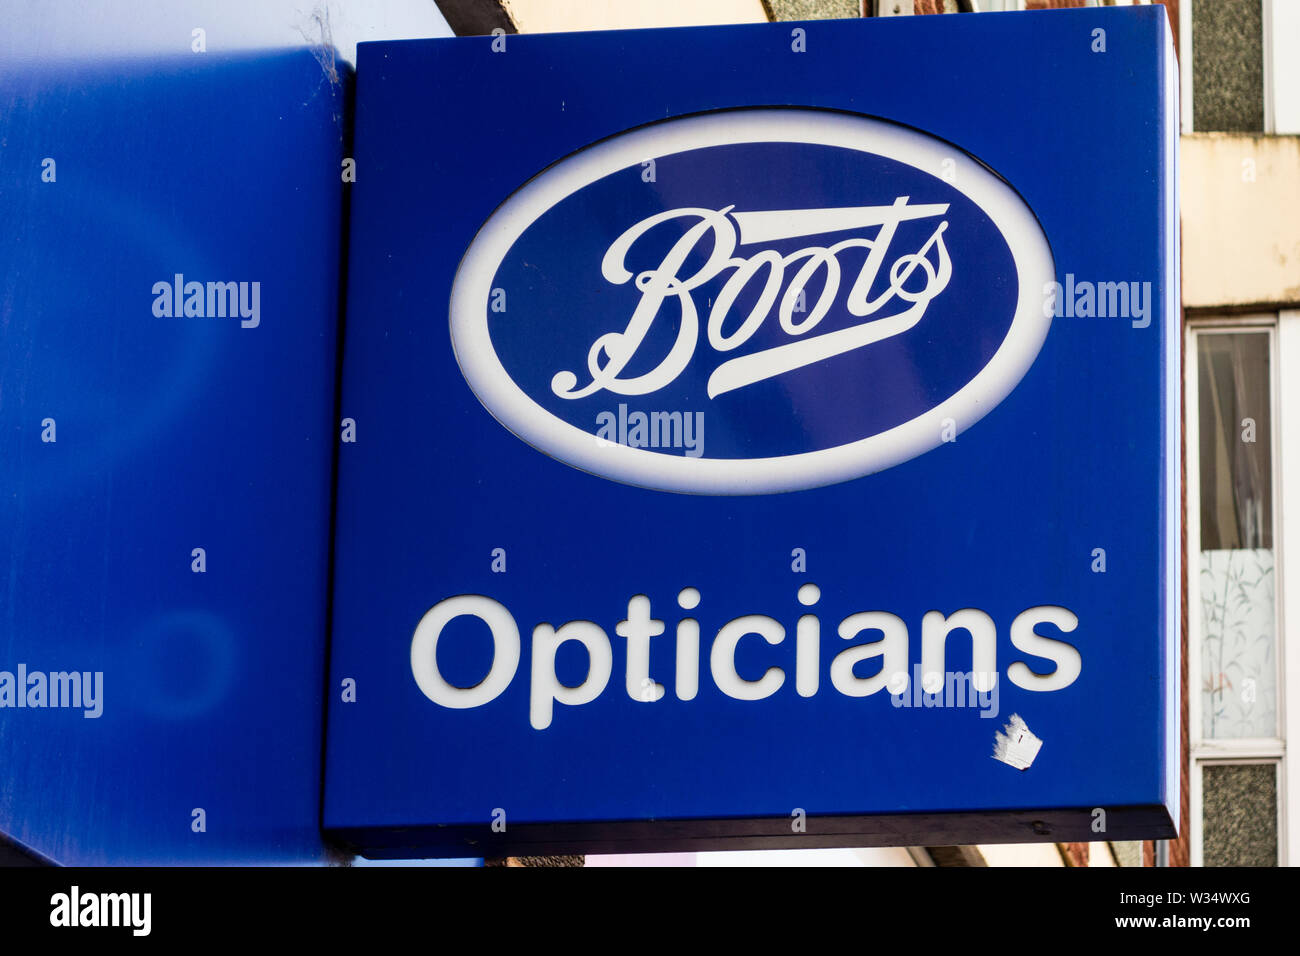 Boots Opticians sign, Stourbridge, West Midlands, UK Stock Photo